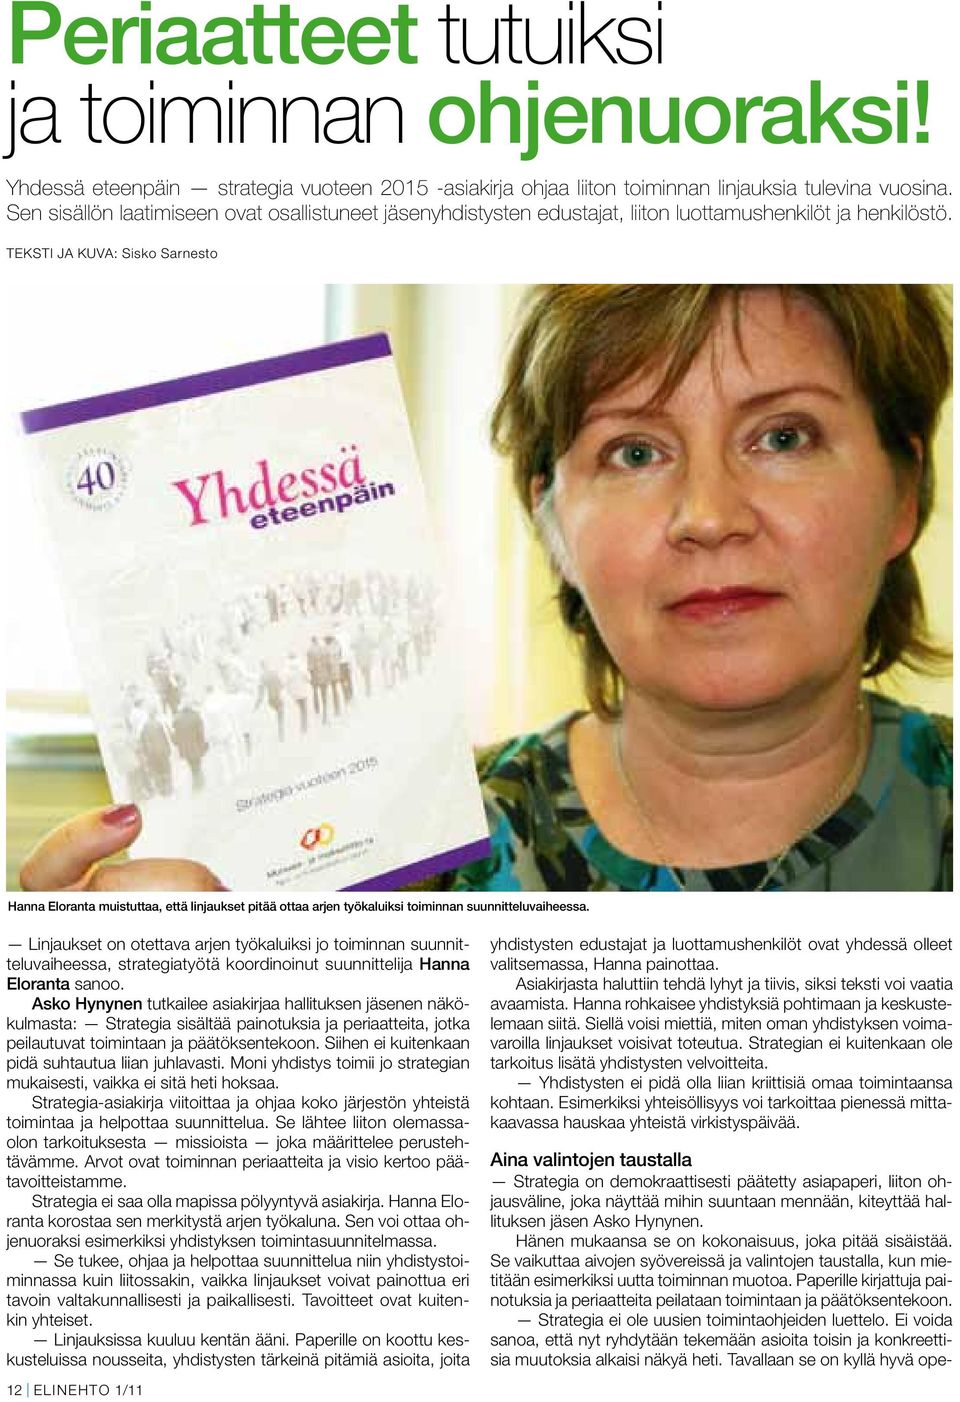 Teksti ja kuva: Sisko Sarnesto Hanna Eloranta muistuttaa, että linjaukset pitää ottaa arjen työkaluiksi toiminnan suunnitteluvaiheessa.